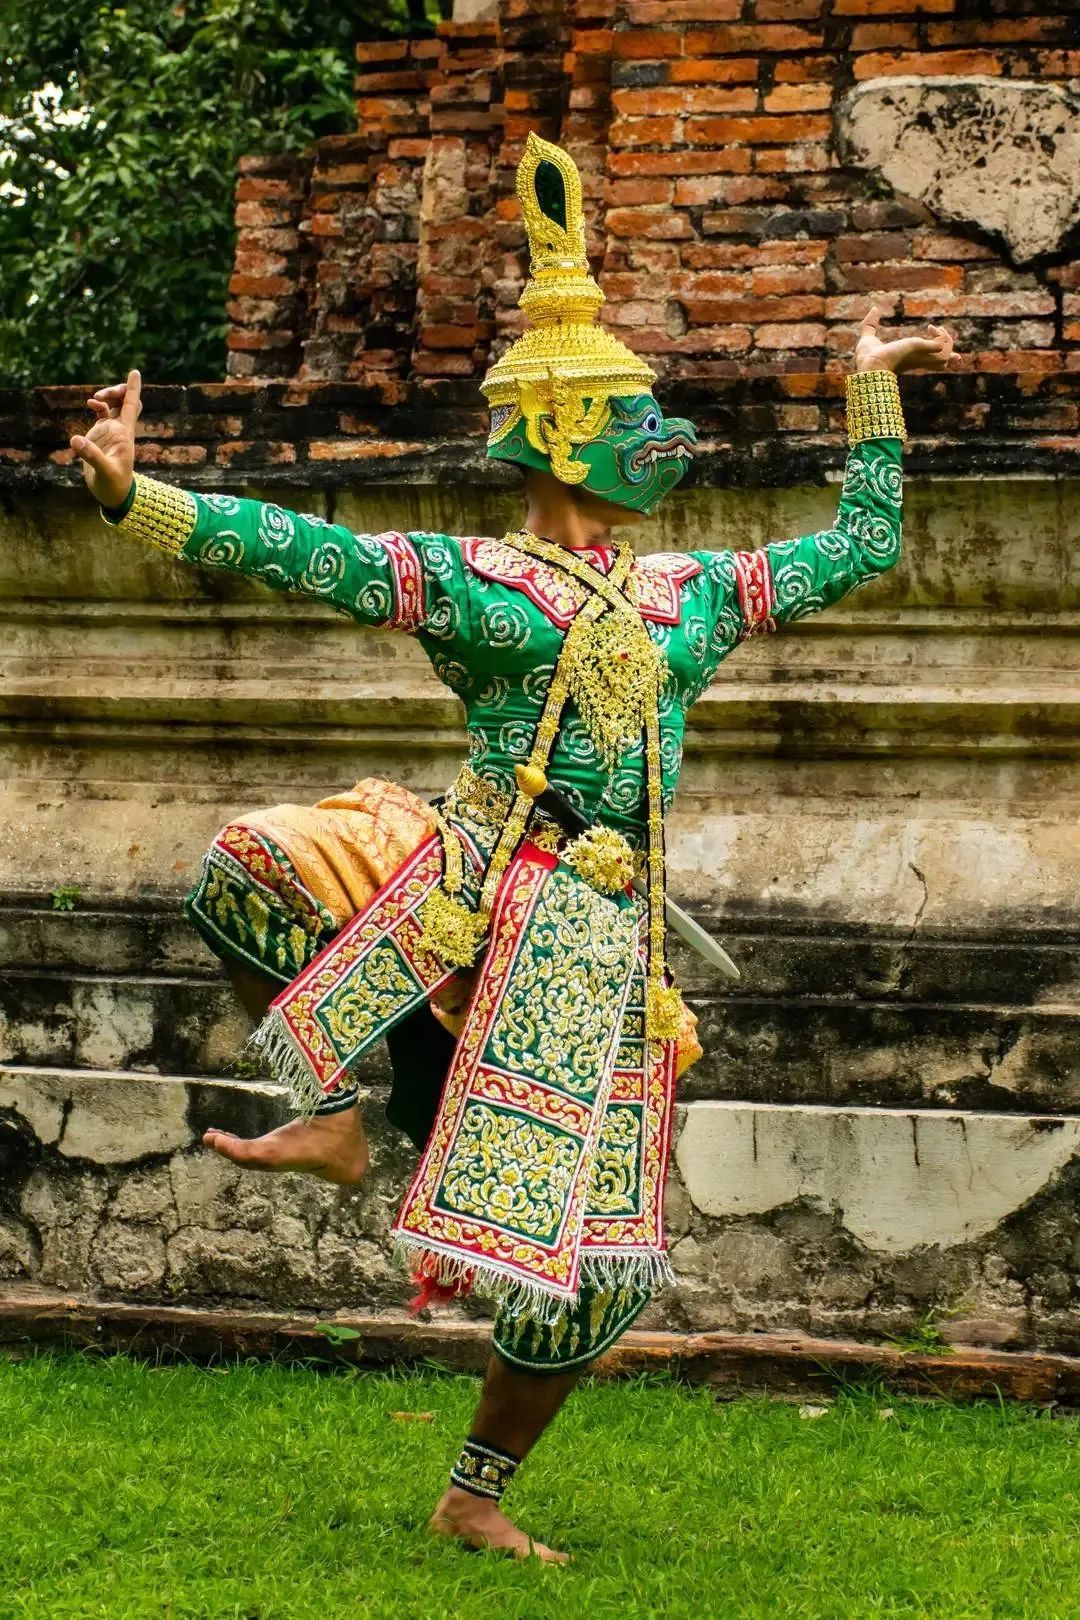 认识泰国诺拉舞｜模仿小鸟的舞蹈入选“世界非遗名录” - 哔哩哔哩